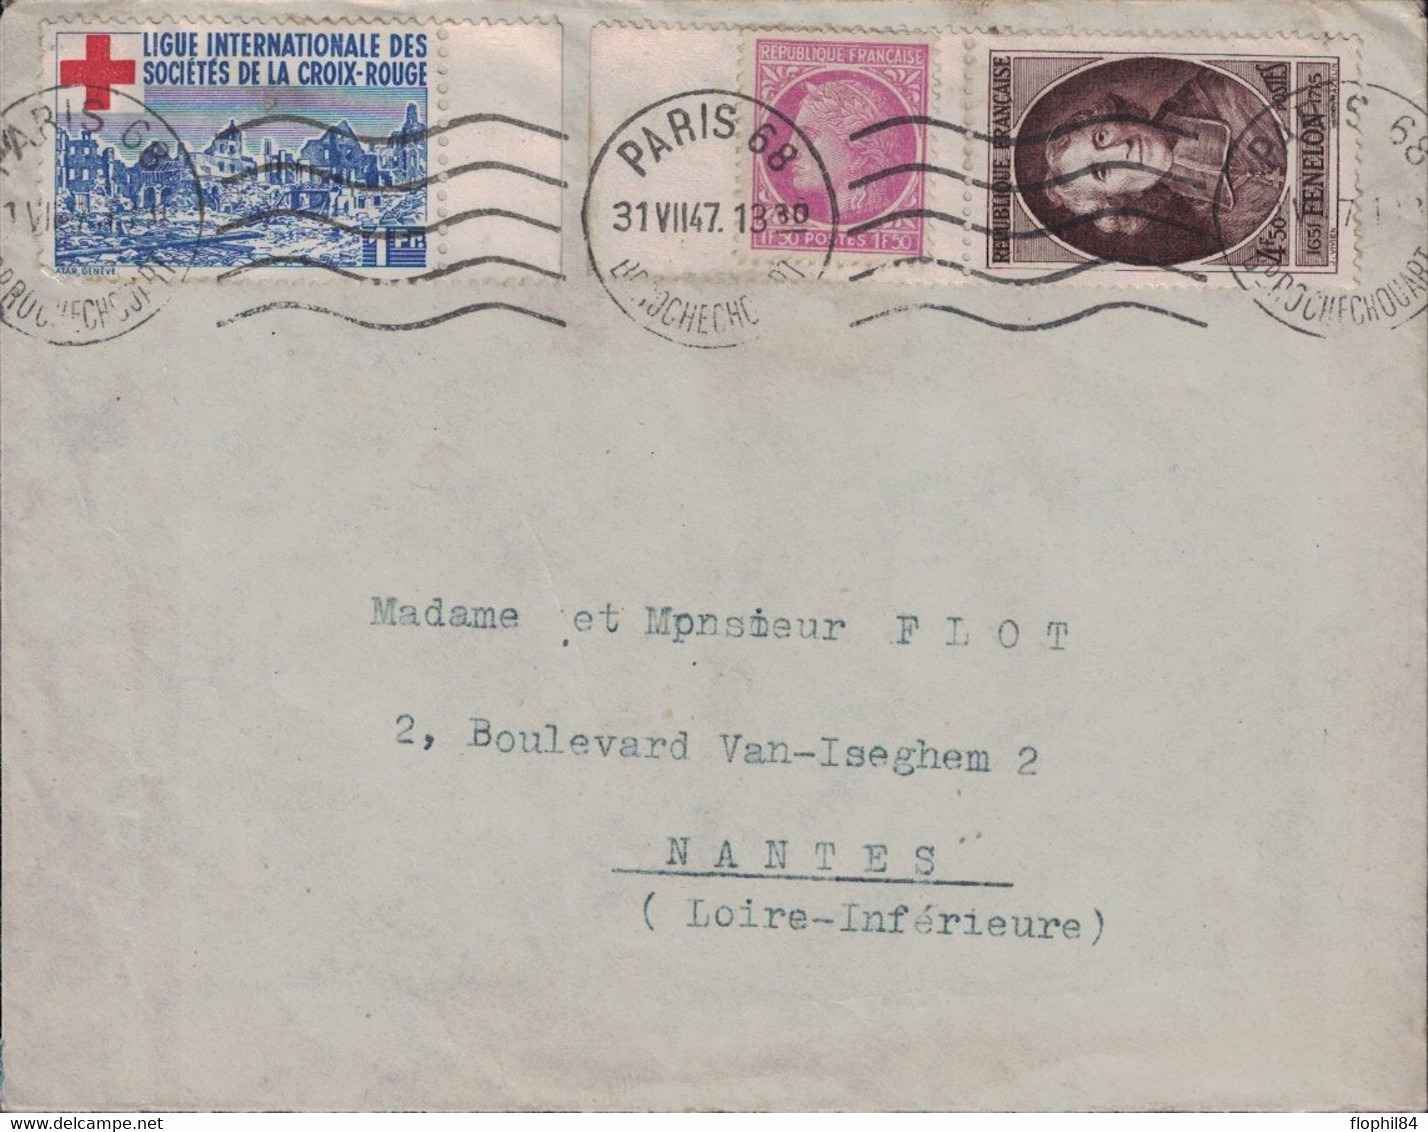 PARIS 68 - BD ROCHECHOUARD - TIMBRE DE DE LA LIGUE DES STES DE LA CROIX ROUGE - BEL AFFRANCHISSEMENT - 31-7-1947. - Croix Rouge